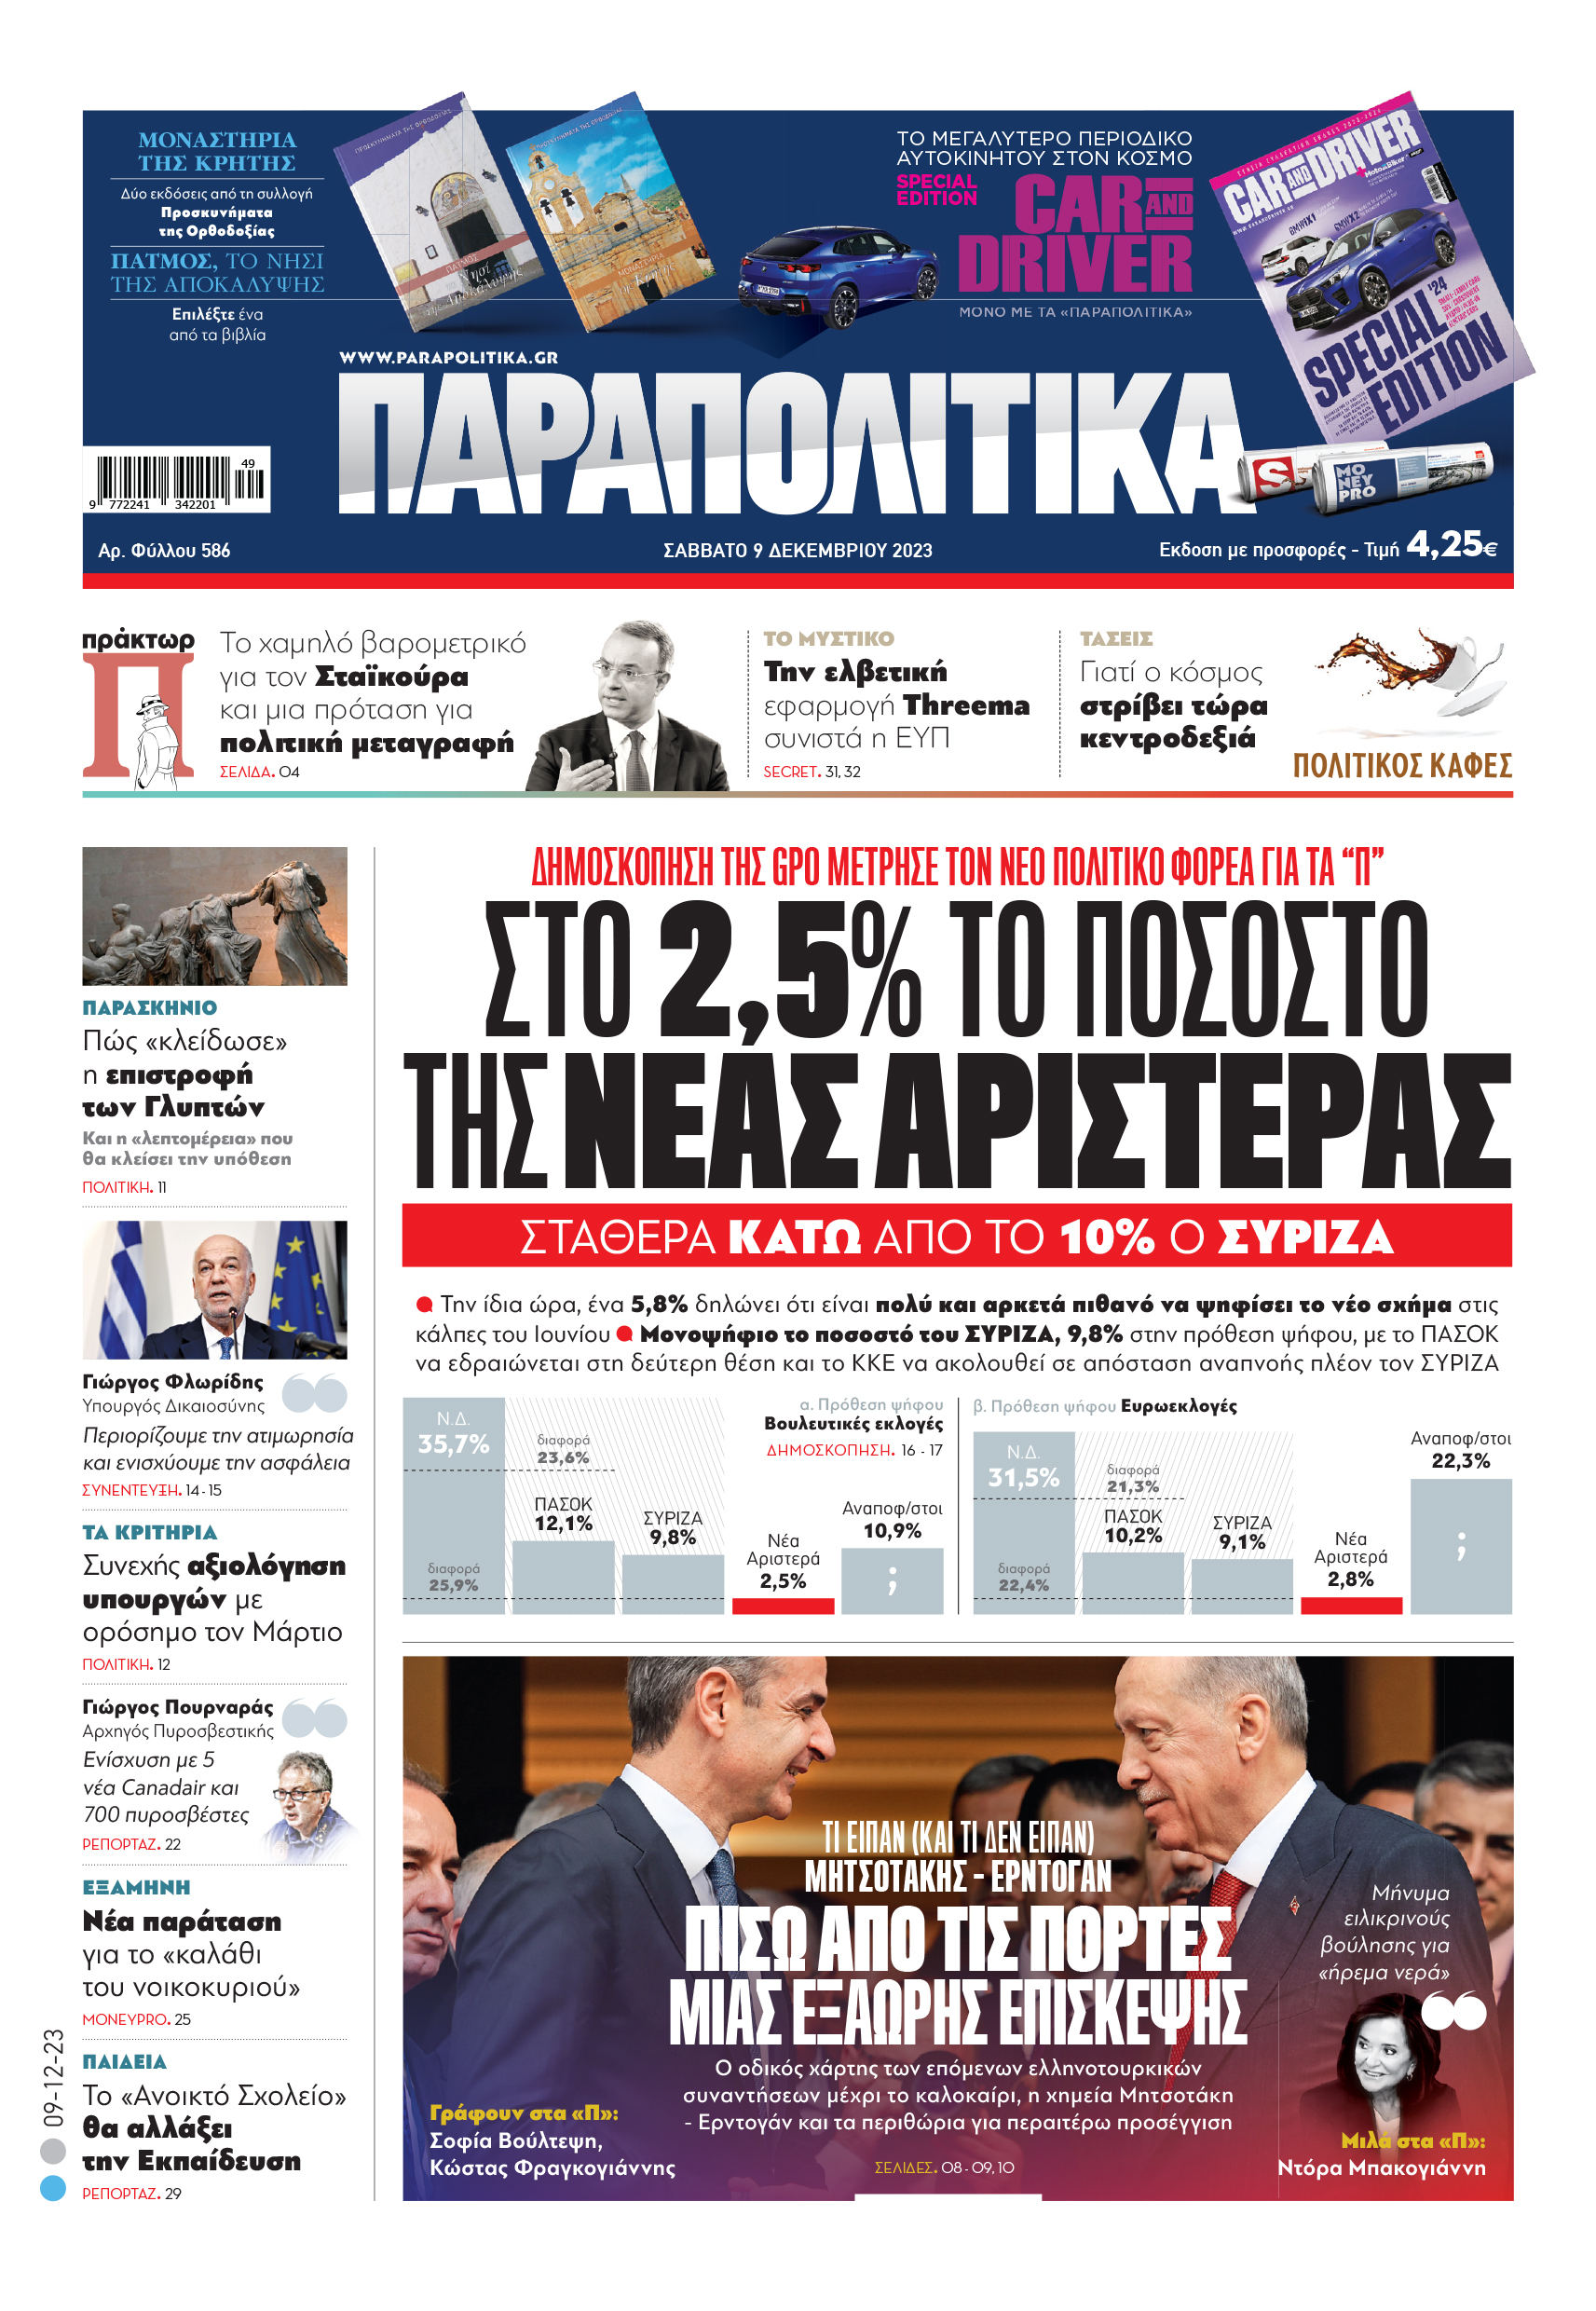 Μονοψήφιο το ποσοστό του ΣΥΡΙΖΑ, 9,8% στην πρόθεση ψήφου, µε το ΠΑΣΟΚ να εδραιώνεται στη δεύτερη θέση και το ΚΚΕ να ακολουθεί σε απόσταση αναπνοής πλέον τον ΣΥΡΙΖΑ Αύριο, Σάββατο 9 Δεκεμβρίου, η εφημερίδα ΠΑΡΑΠΟΛΙΤΙΚΑ κυκλοφορεί σε όλα τα περίπτερα της χώρας με πλούσια θεματολογία, πολλές αποκλειστικότητες, αλλά και με αποκαλυπτικά θέματα και ρεπορτάζ! Διαβάστε στα Παραπολιτικά που κυκλοφορούν το Σάββατο 9/12 ∆ΗΜΟΣΚΟΠΗΣΗ ΤΗΣ GPO ΜΕΤΡΗΣΕ ΤΟΝ ΝΕΟ ΠΟΛΙΤΙΚΟ ΦΟΡΕΑ ΓΙΑ ΤΑ «Π» ΣΤΟ 2,5% ΤΟ ΠΟΣΟΣΤΟ ΤΗΣ ΝΕΑΣ ΑΡΙΣΤΕΡΑ